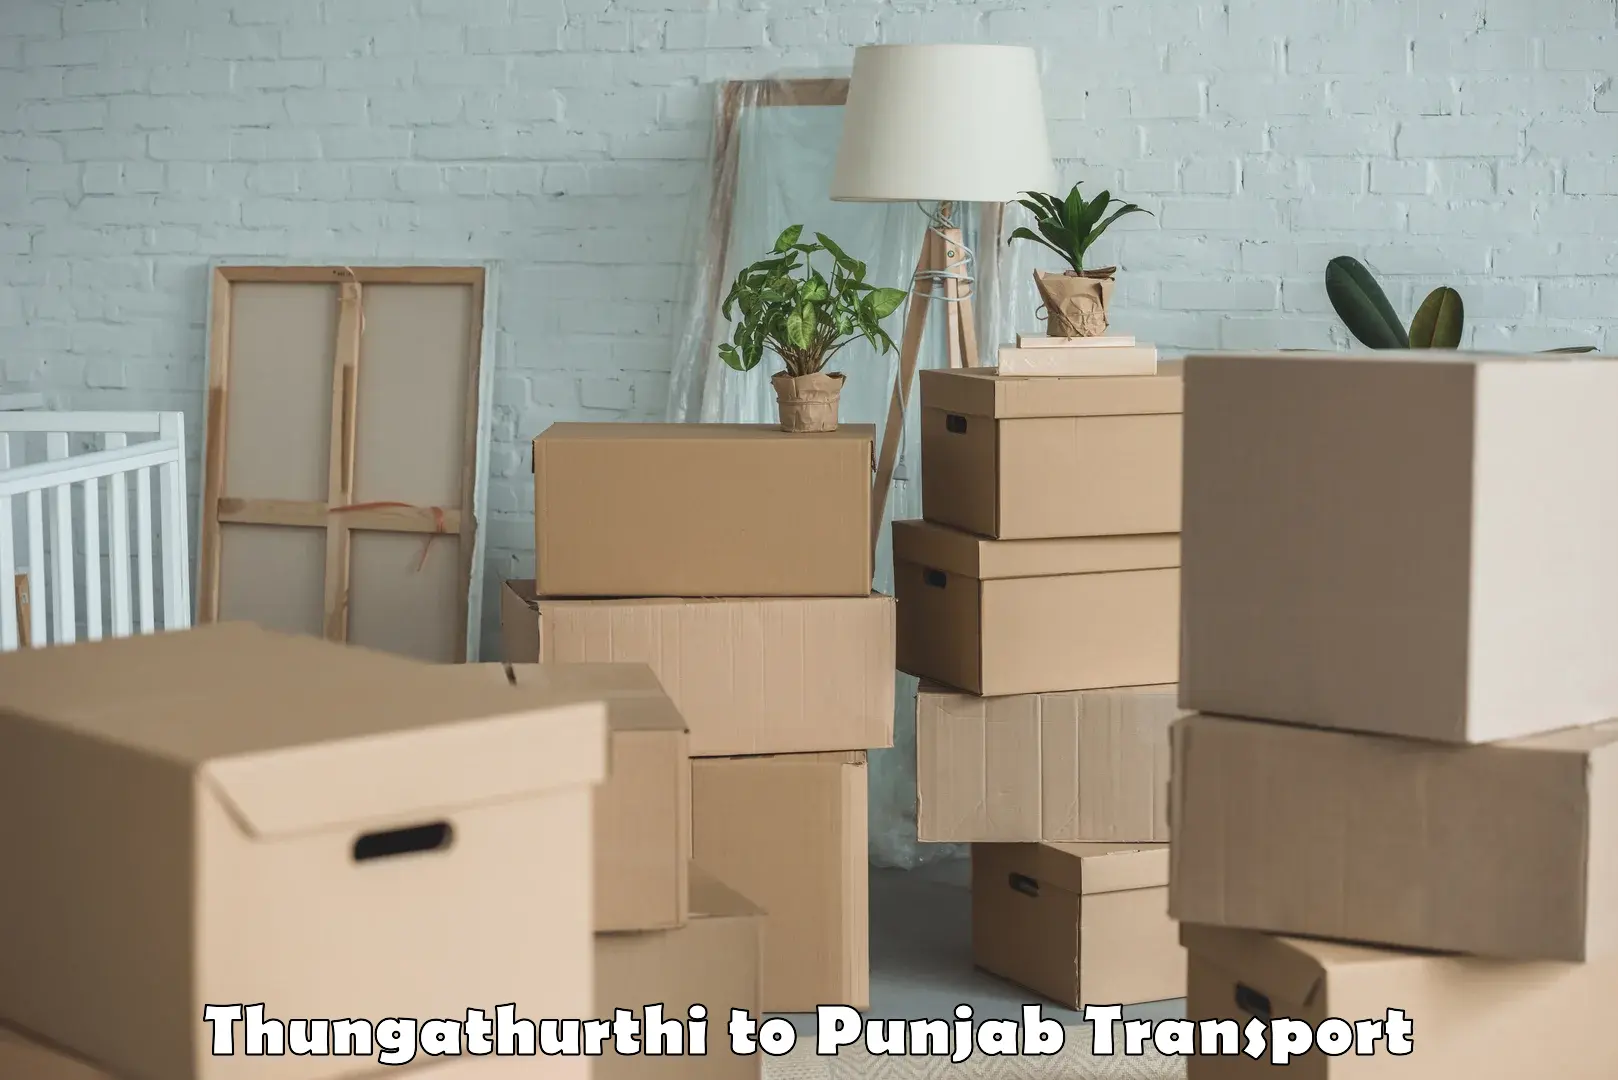 Pick up transport service Thungathurthi to Amritsar